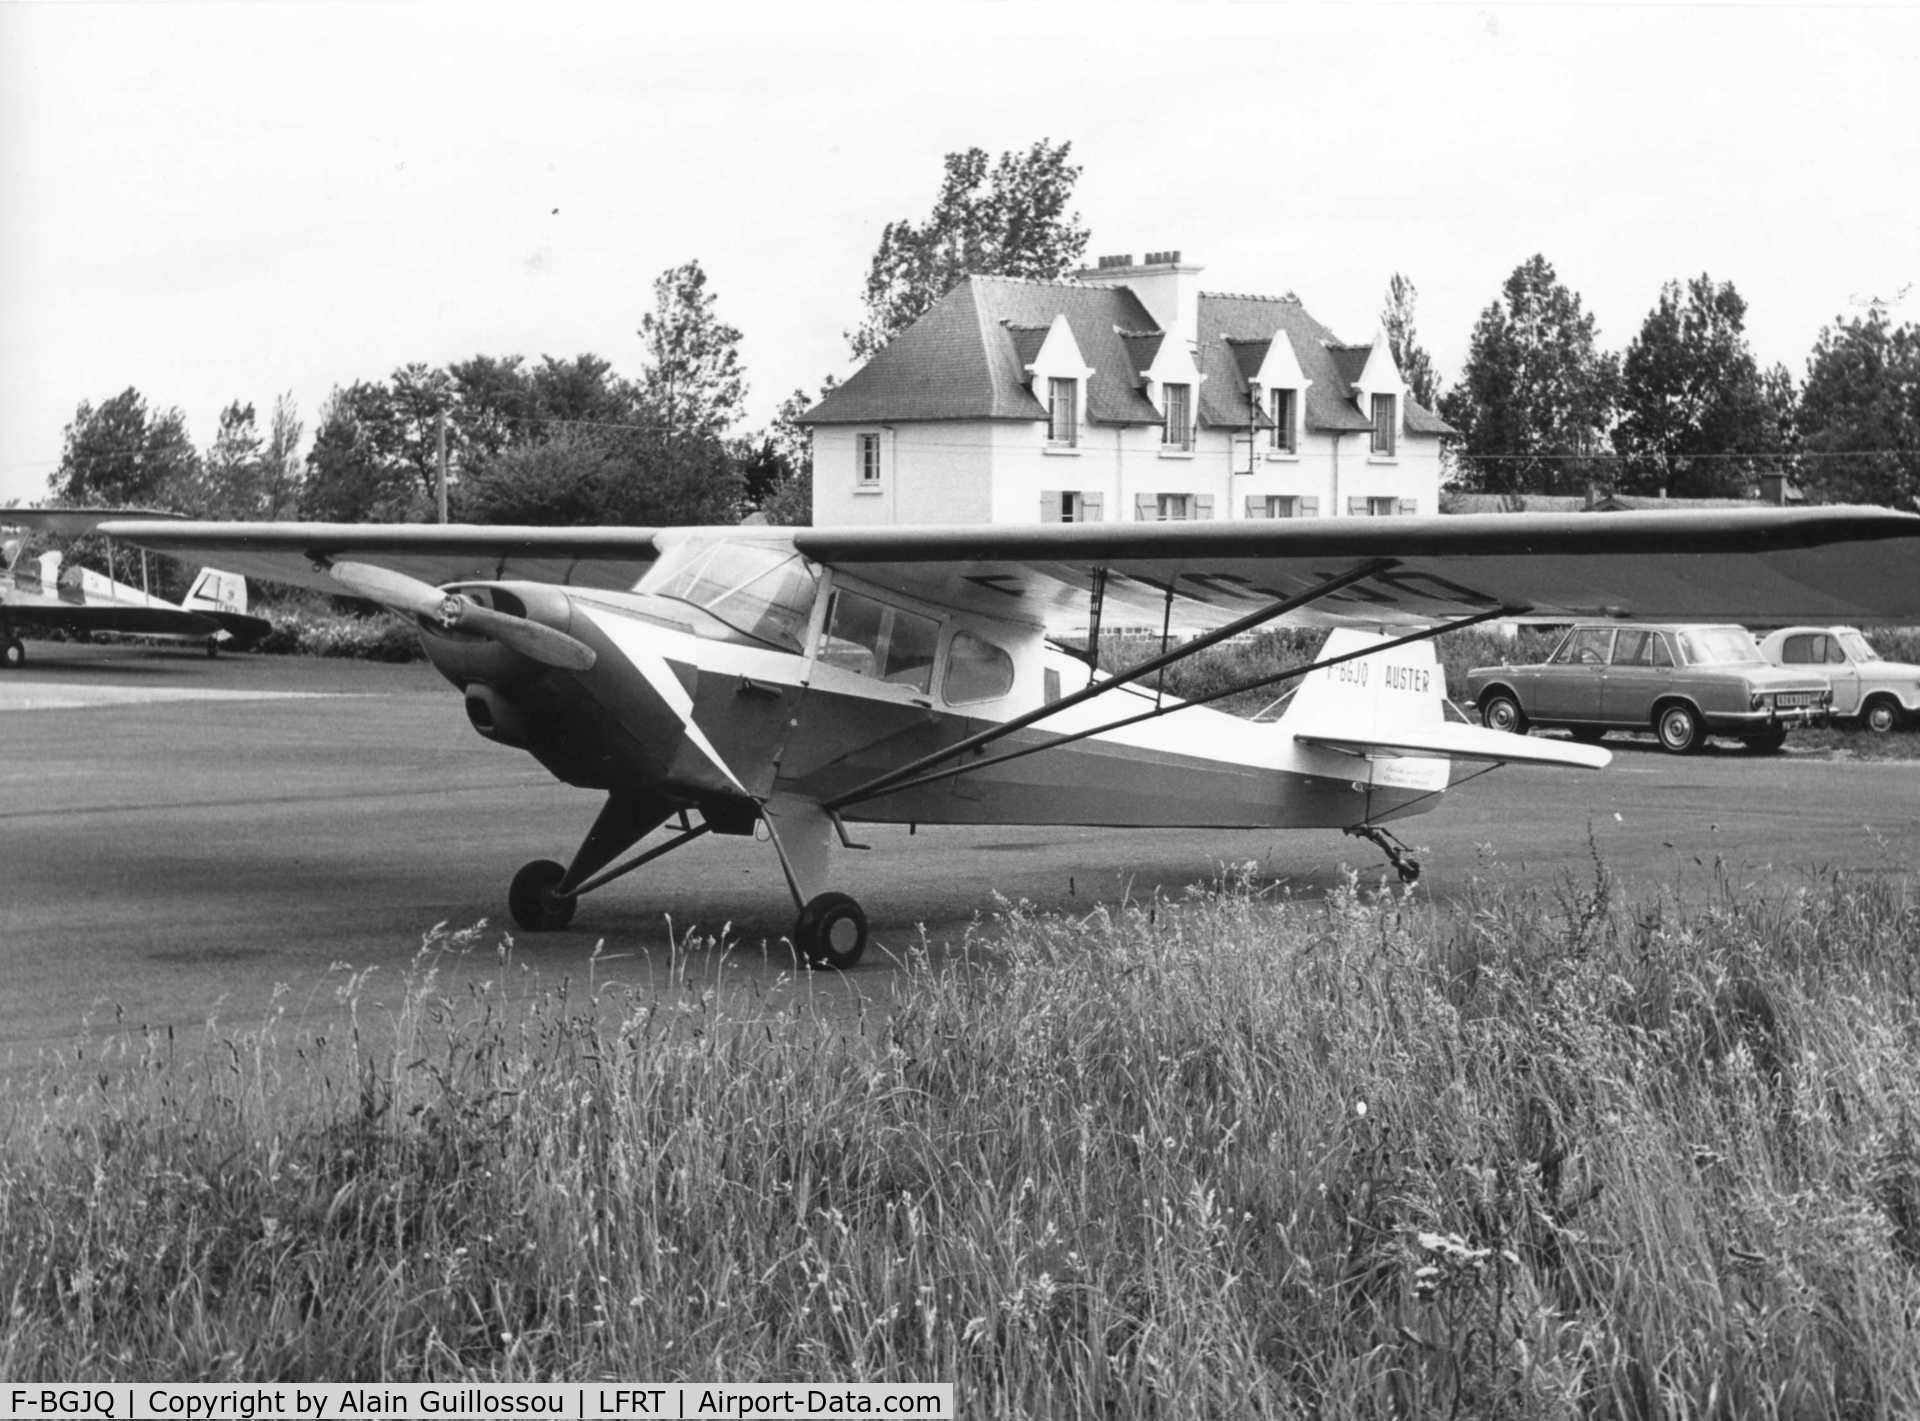 F-BGJQ, 1946 Auster J-2 Arrow C/N 2378, Owner in 1965 : Aéroclub des Côtes du Nord